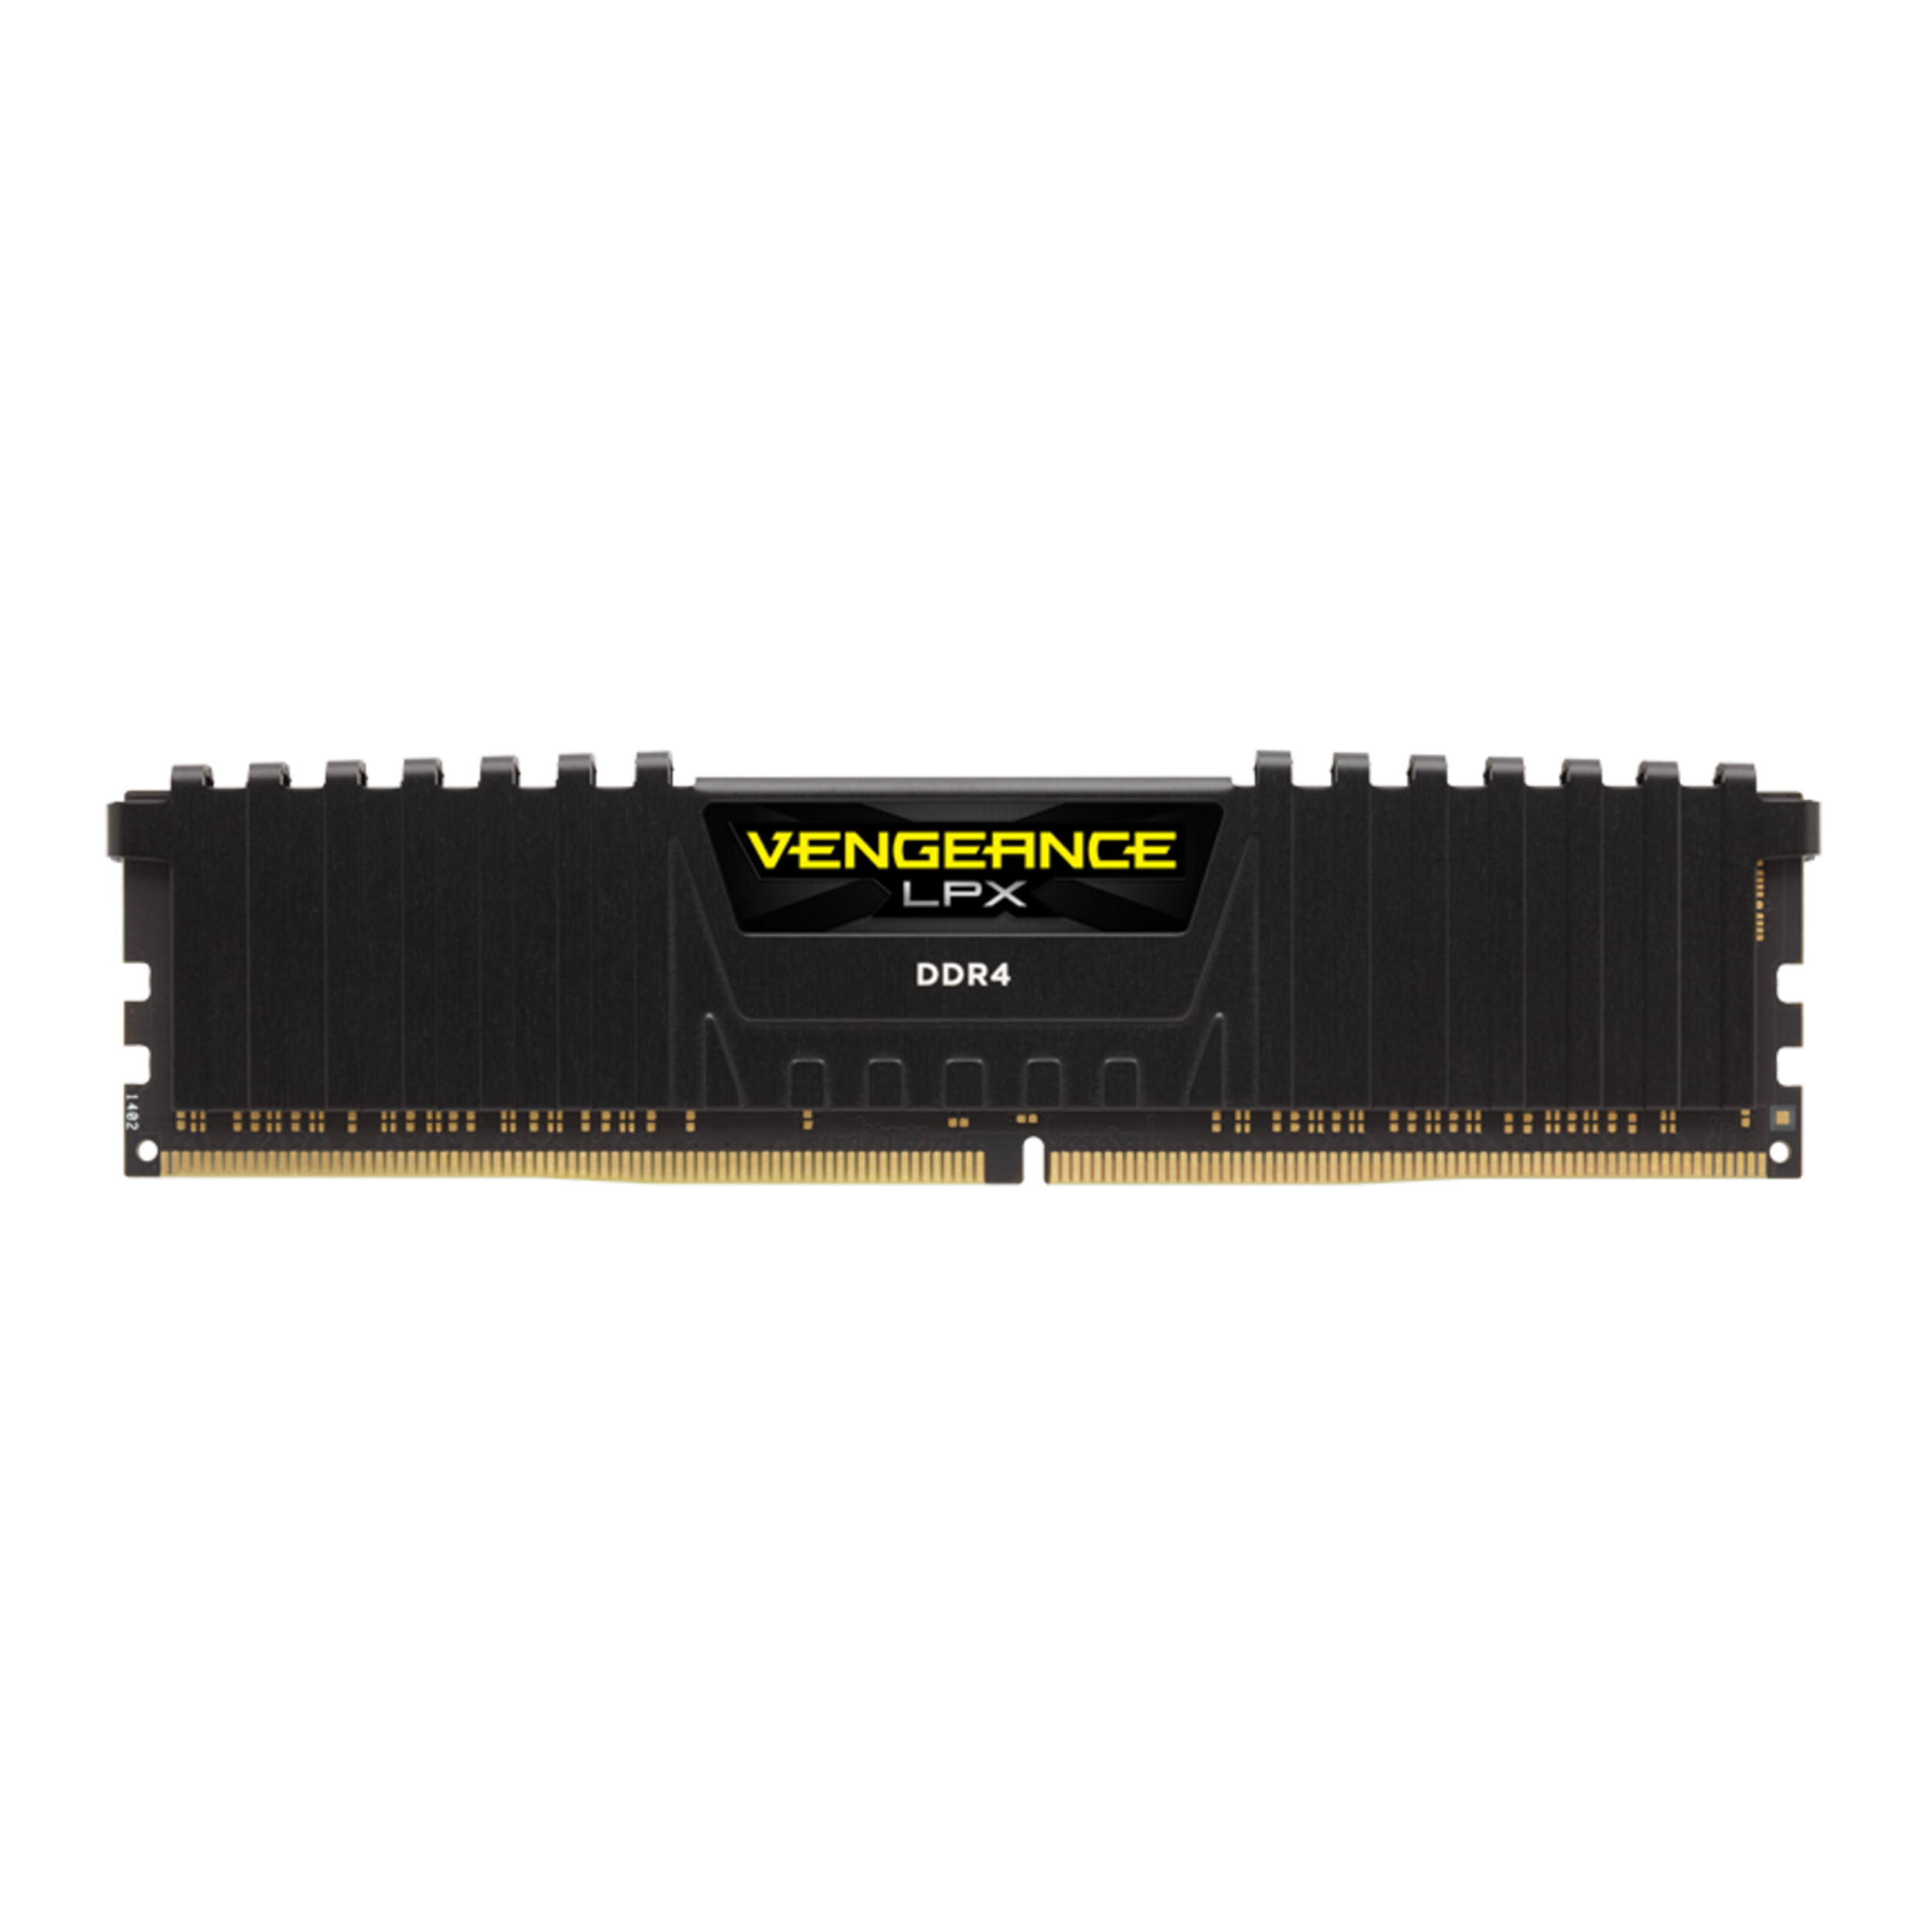  رم دسکتاپ DDR4 تک کاناله 3000 مگاهرتز CL16 کورسیر مدل Vengeance LPX ظرفیت 8گیگابایت